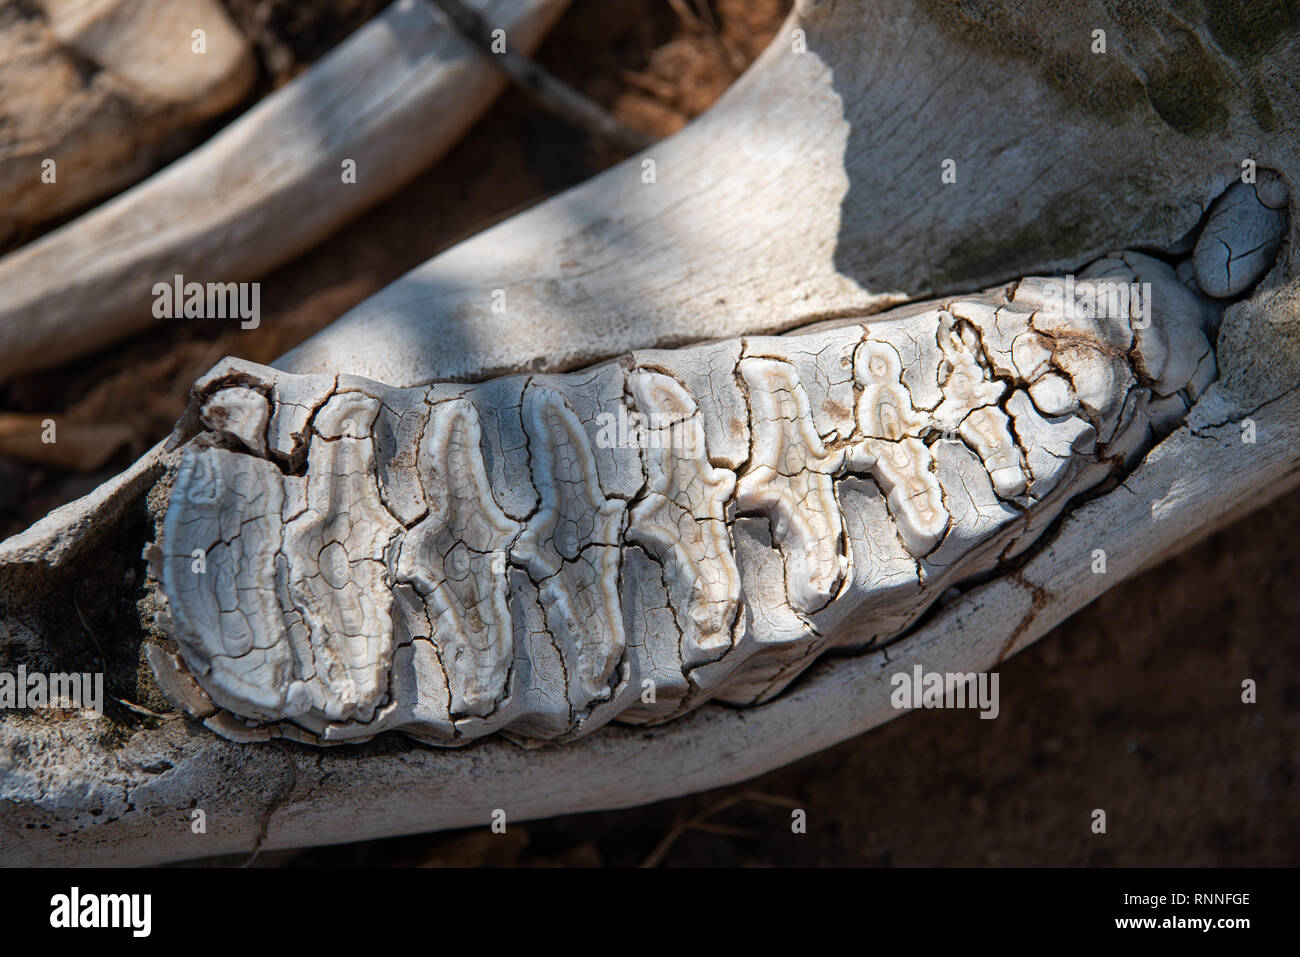 Crâne d'un éléphant avec un gros plan des dents Banque D'Images